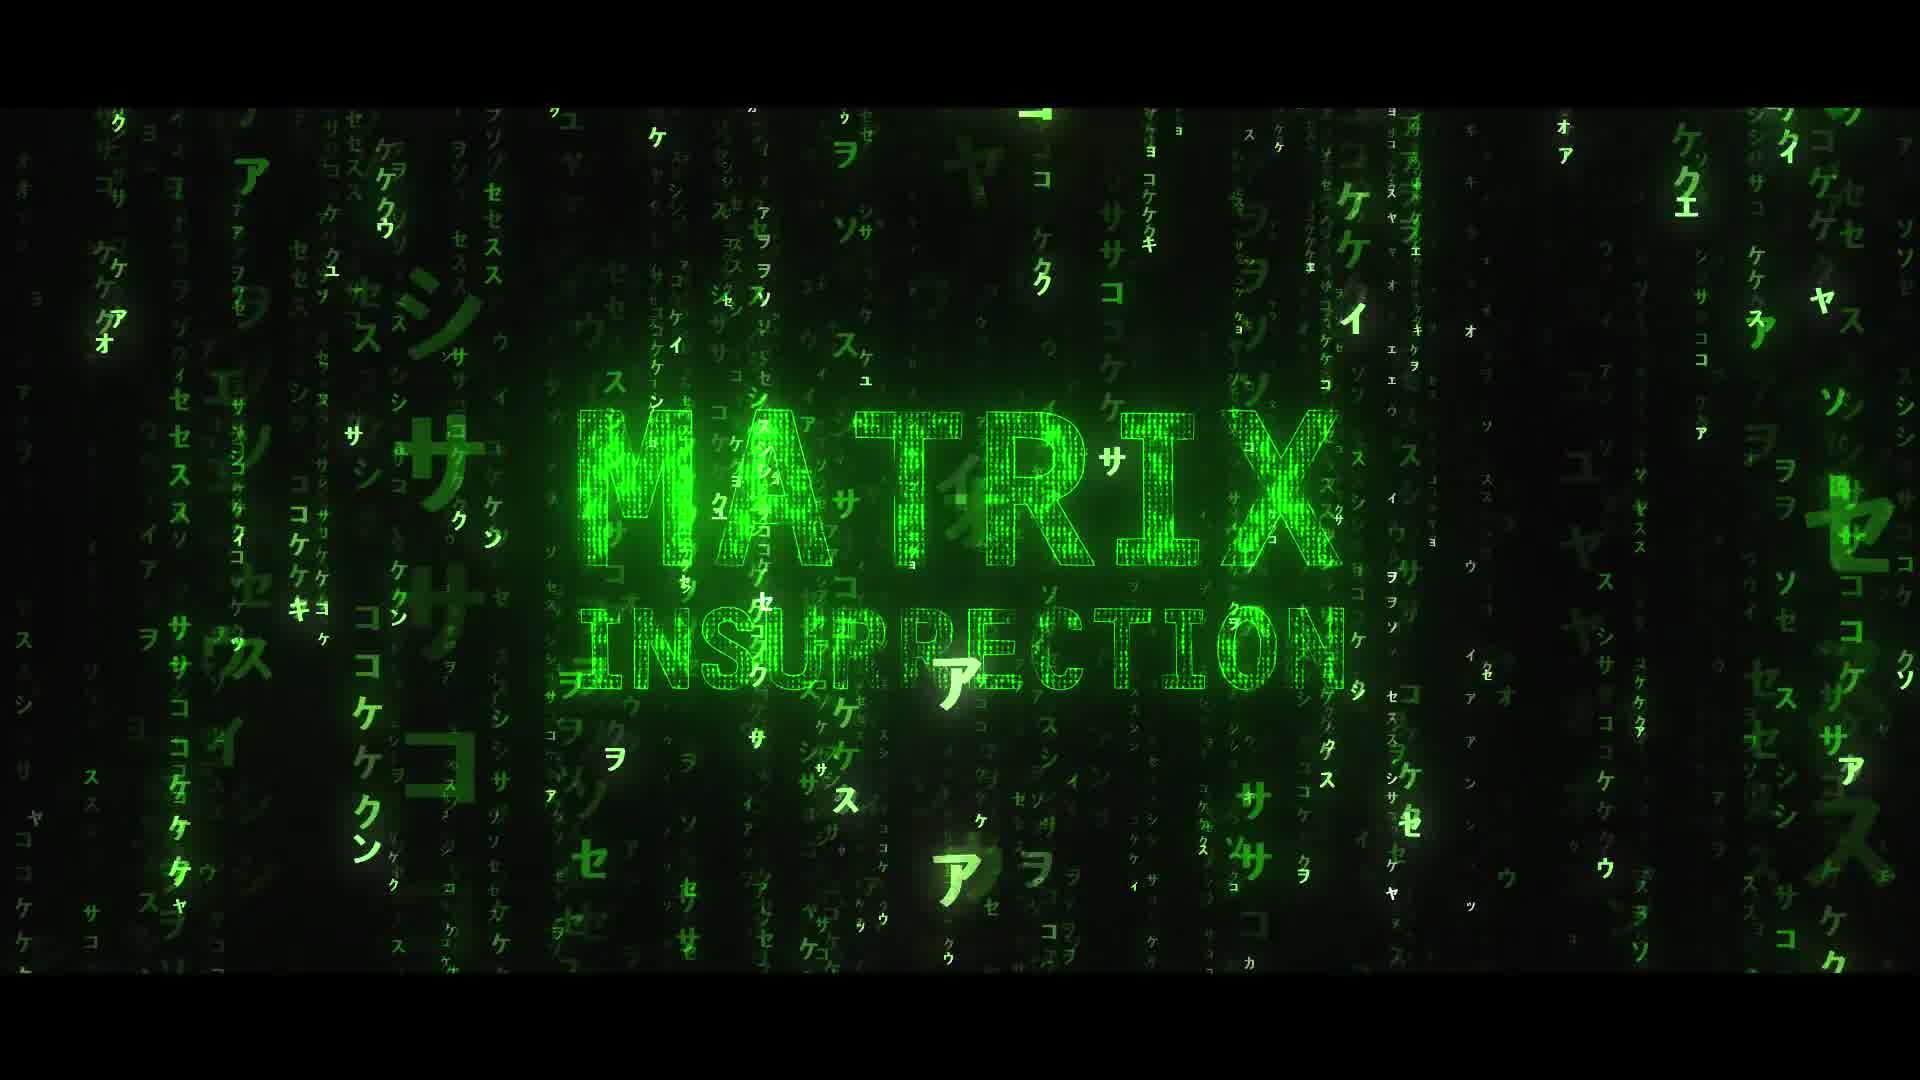 Matrix 4 Awakening Videohive 35248912 After Effects Image 11